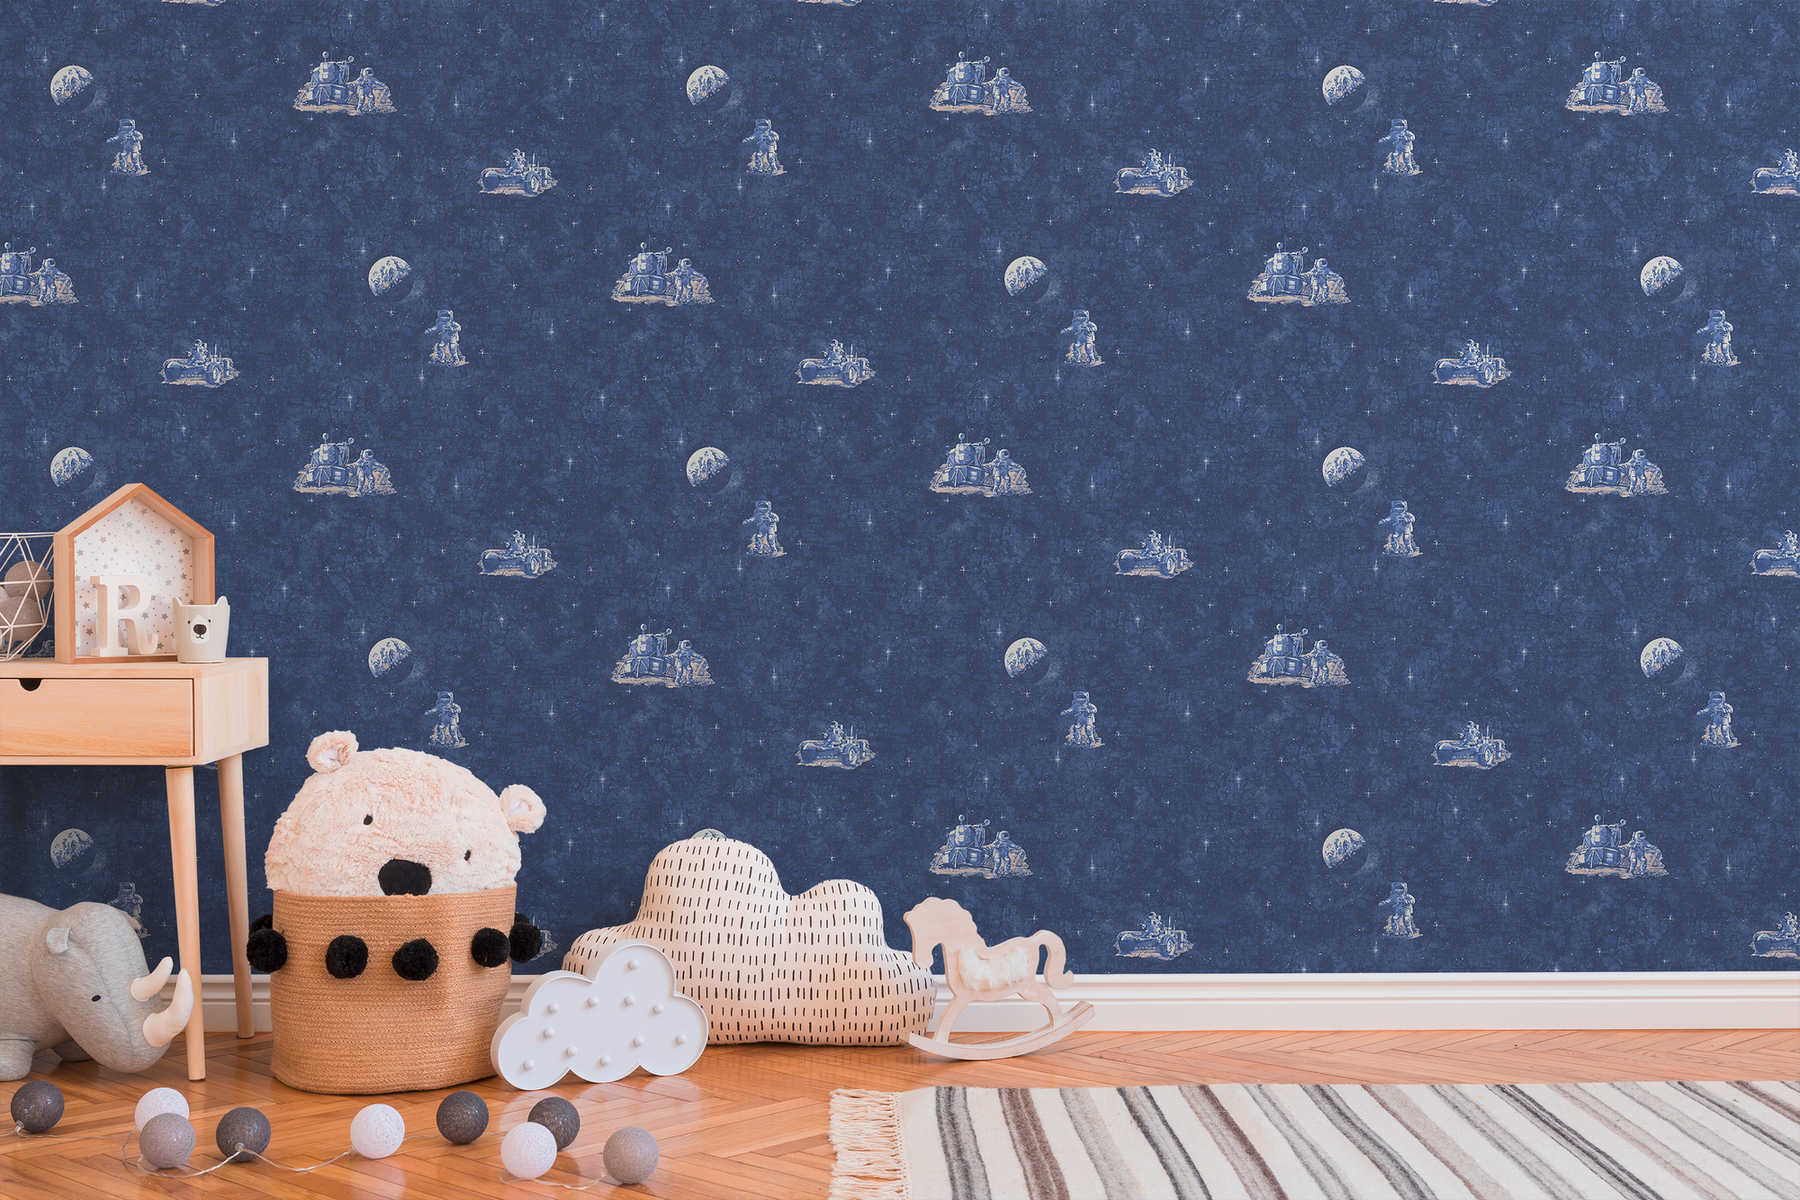             Kinderkamer behang astronaut, ruimte & sterren - blauw, wit
        